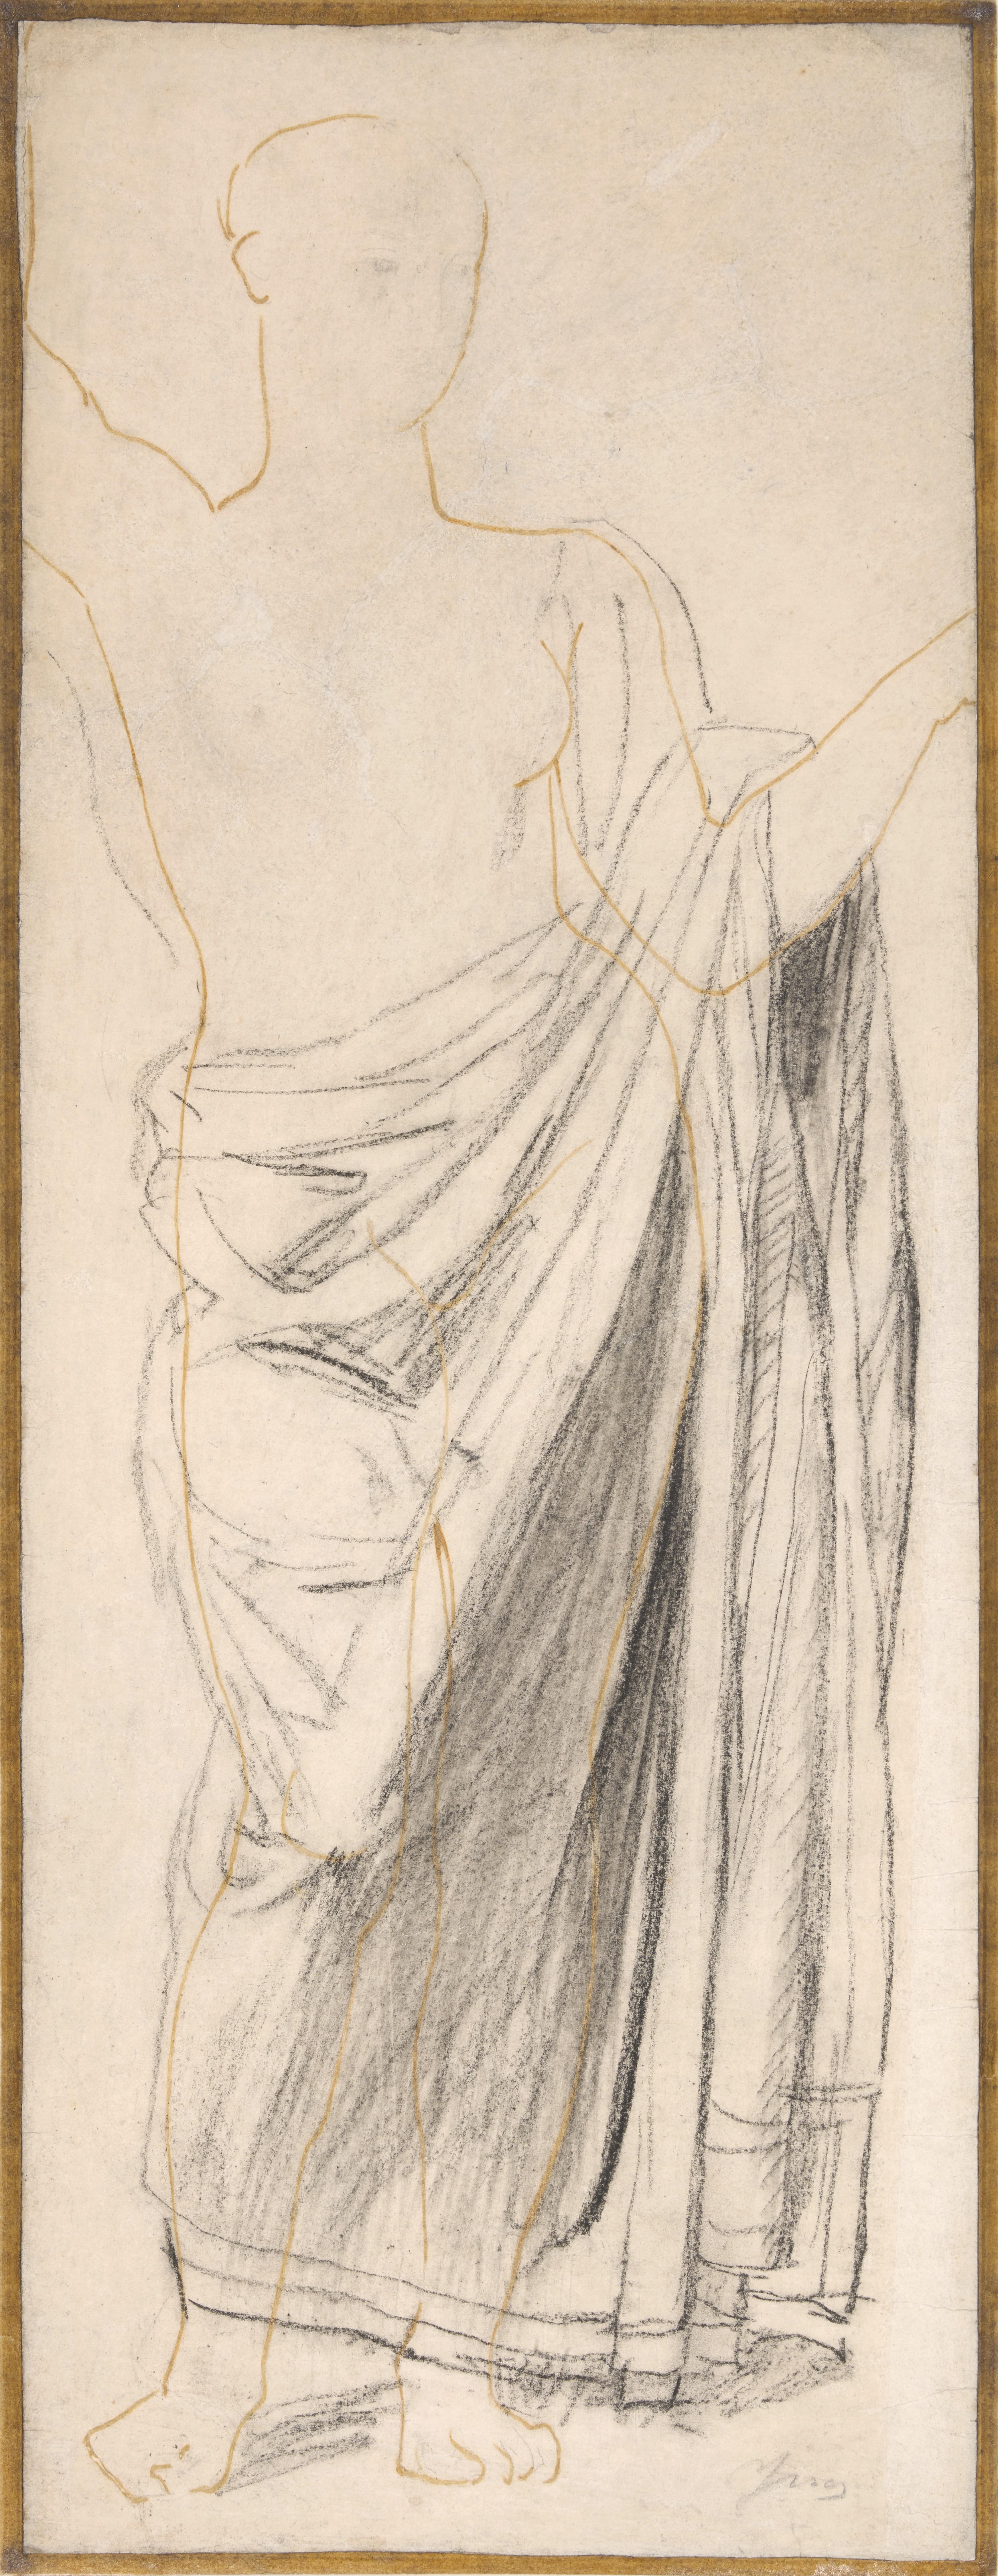 Astrea, eine Studie für das Fresko des Goldenen Zeitalters in Dampierre von Ingres – Art von Jean-Auguste-Dominique Ingres